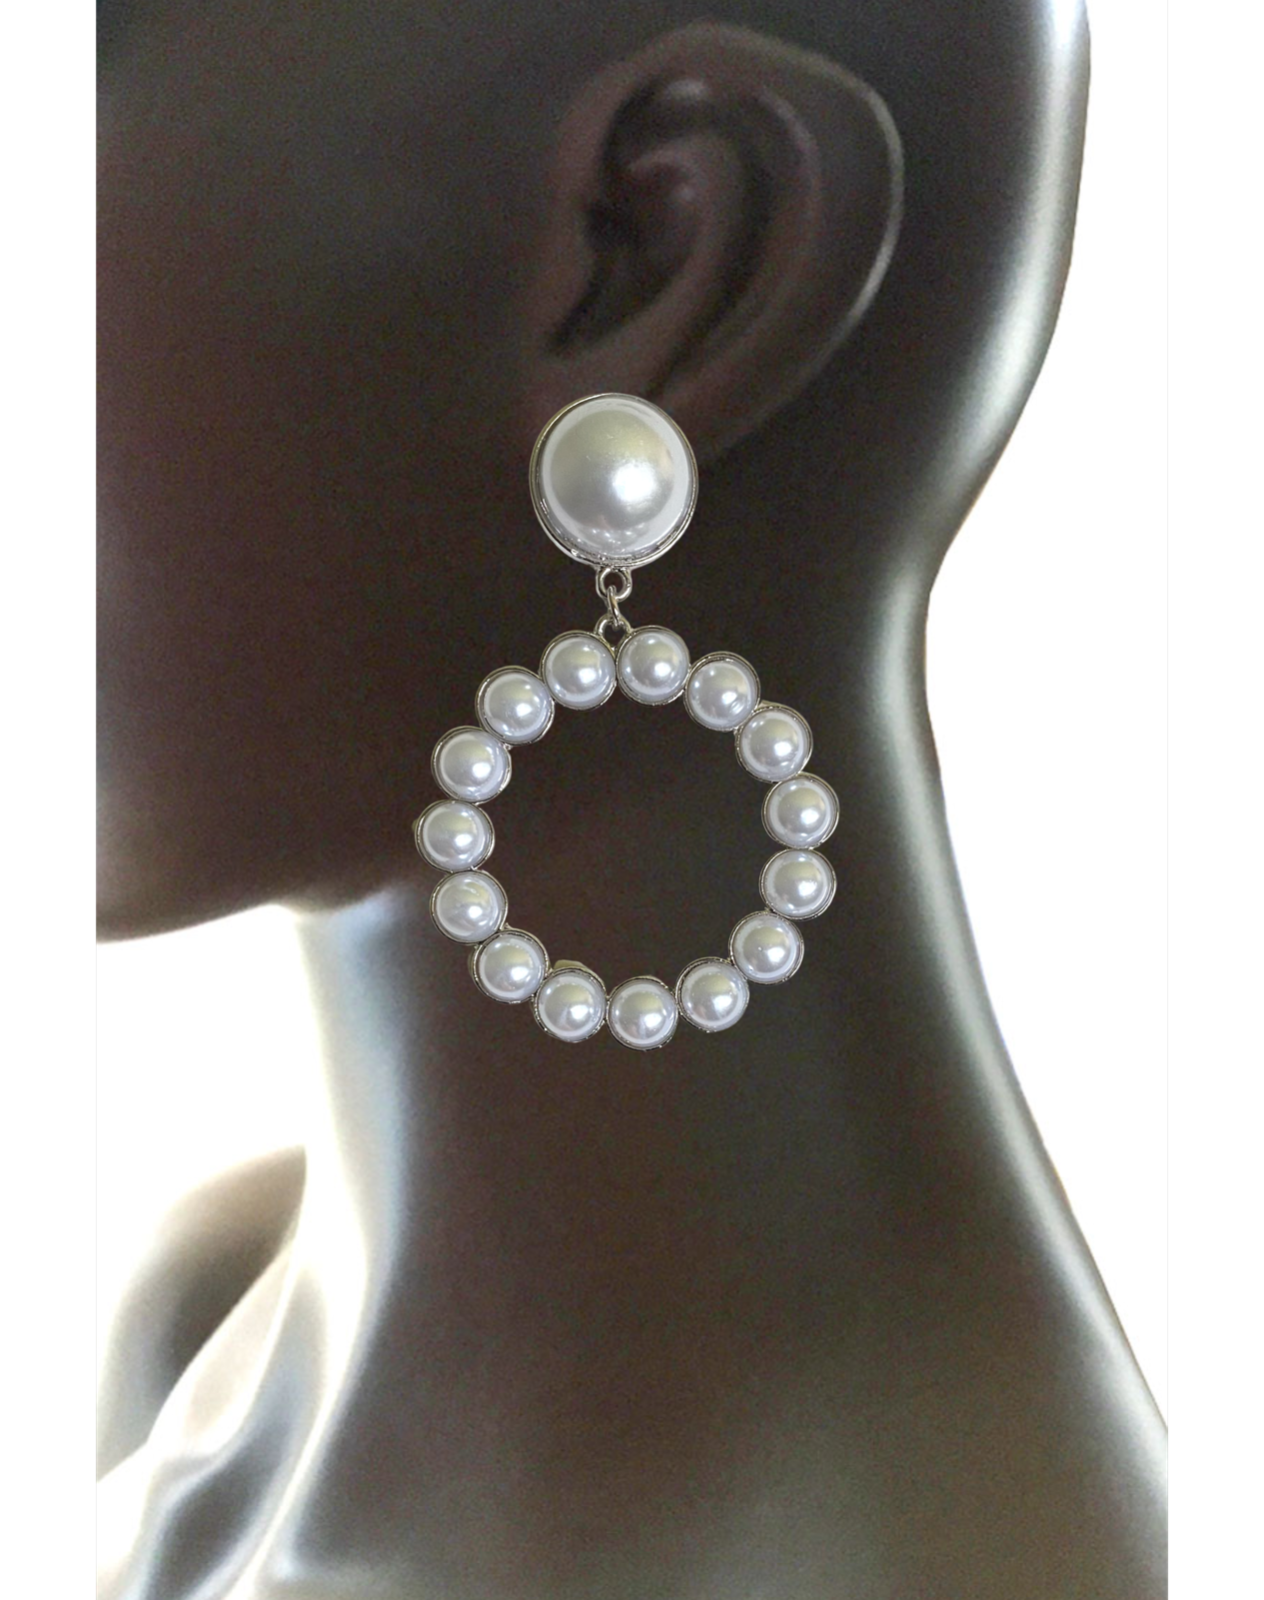 3" Long White Faux Pearls Hoop Earrings Pierced Ears Silver Tone Casual, Party - $17.10